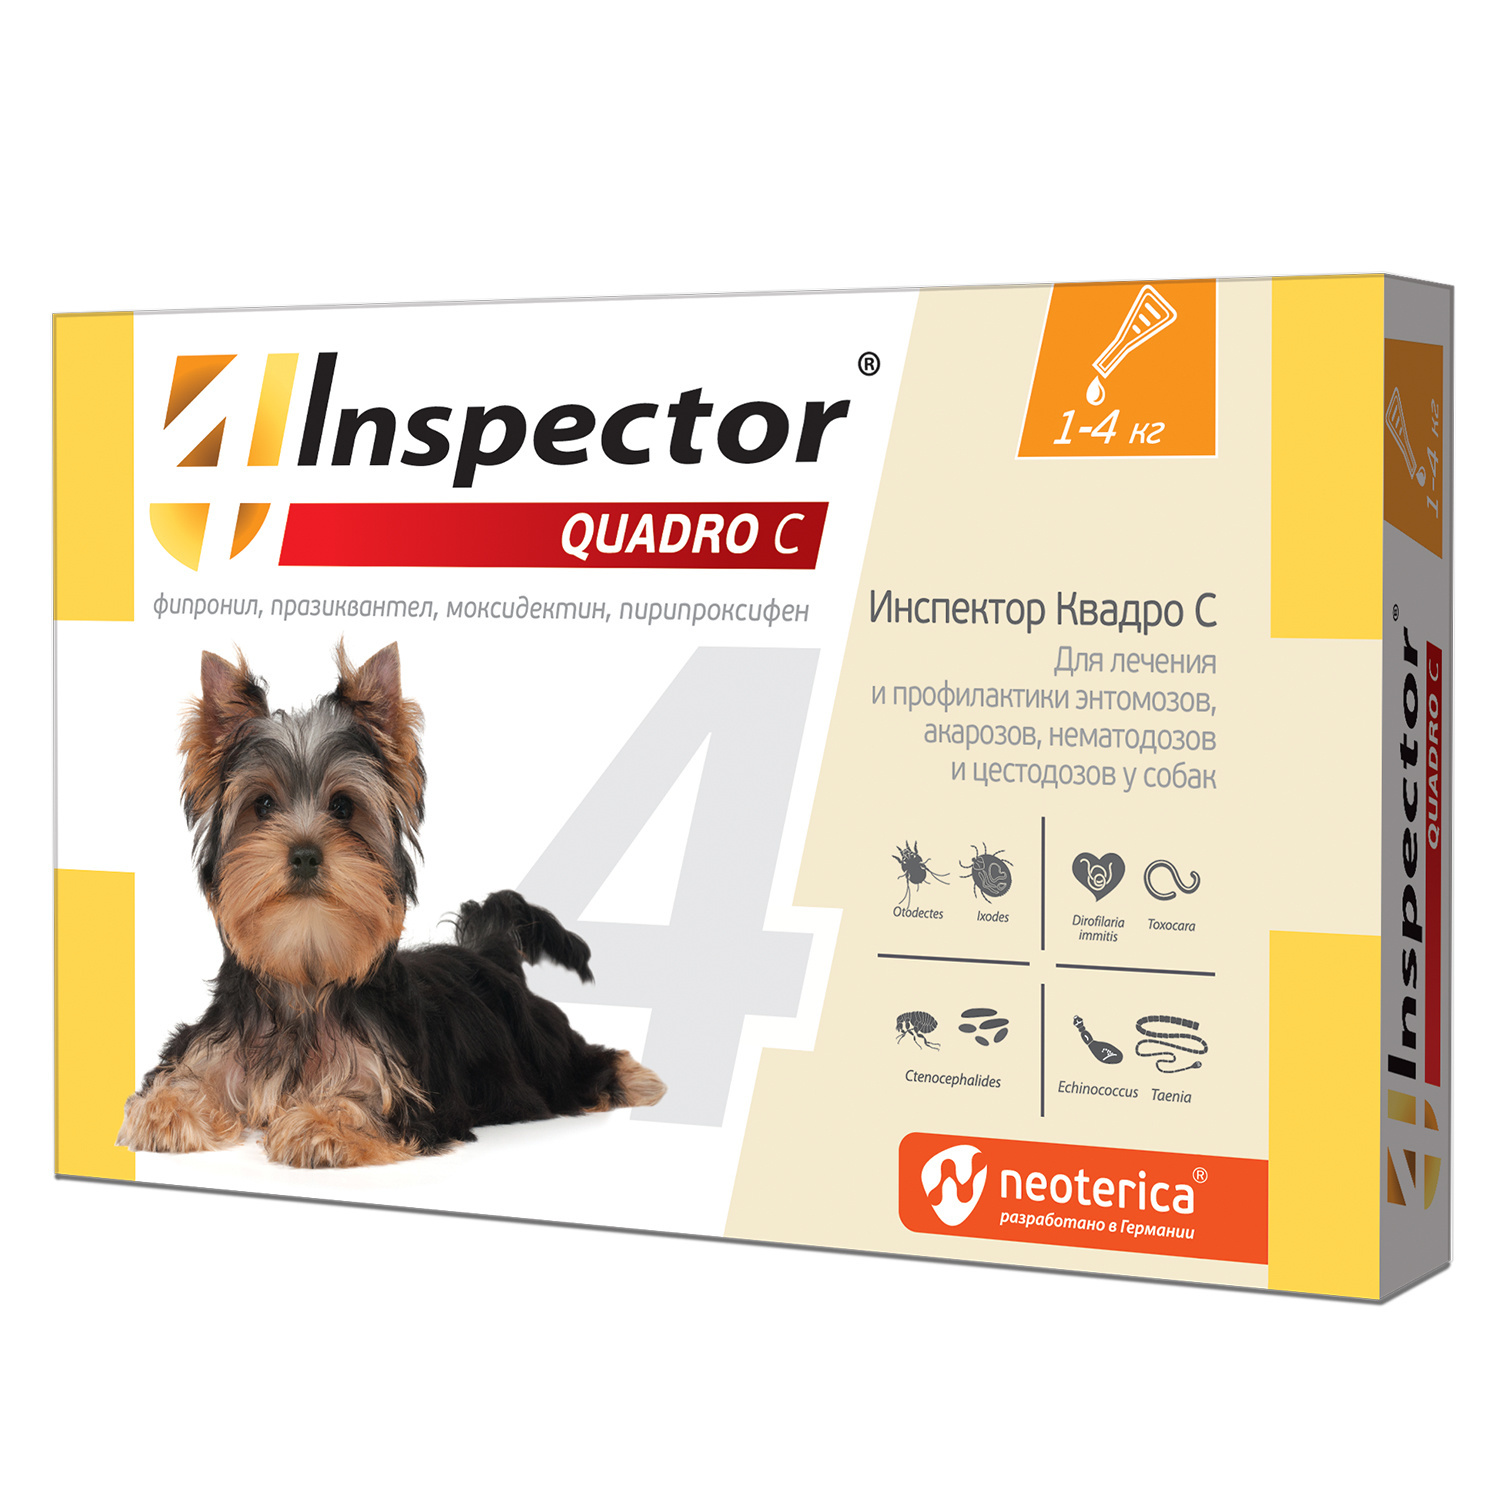 Inspector quadro капли на холку для собак весом 1-4 кг от клещей, насекомых, глистов (18 г)